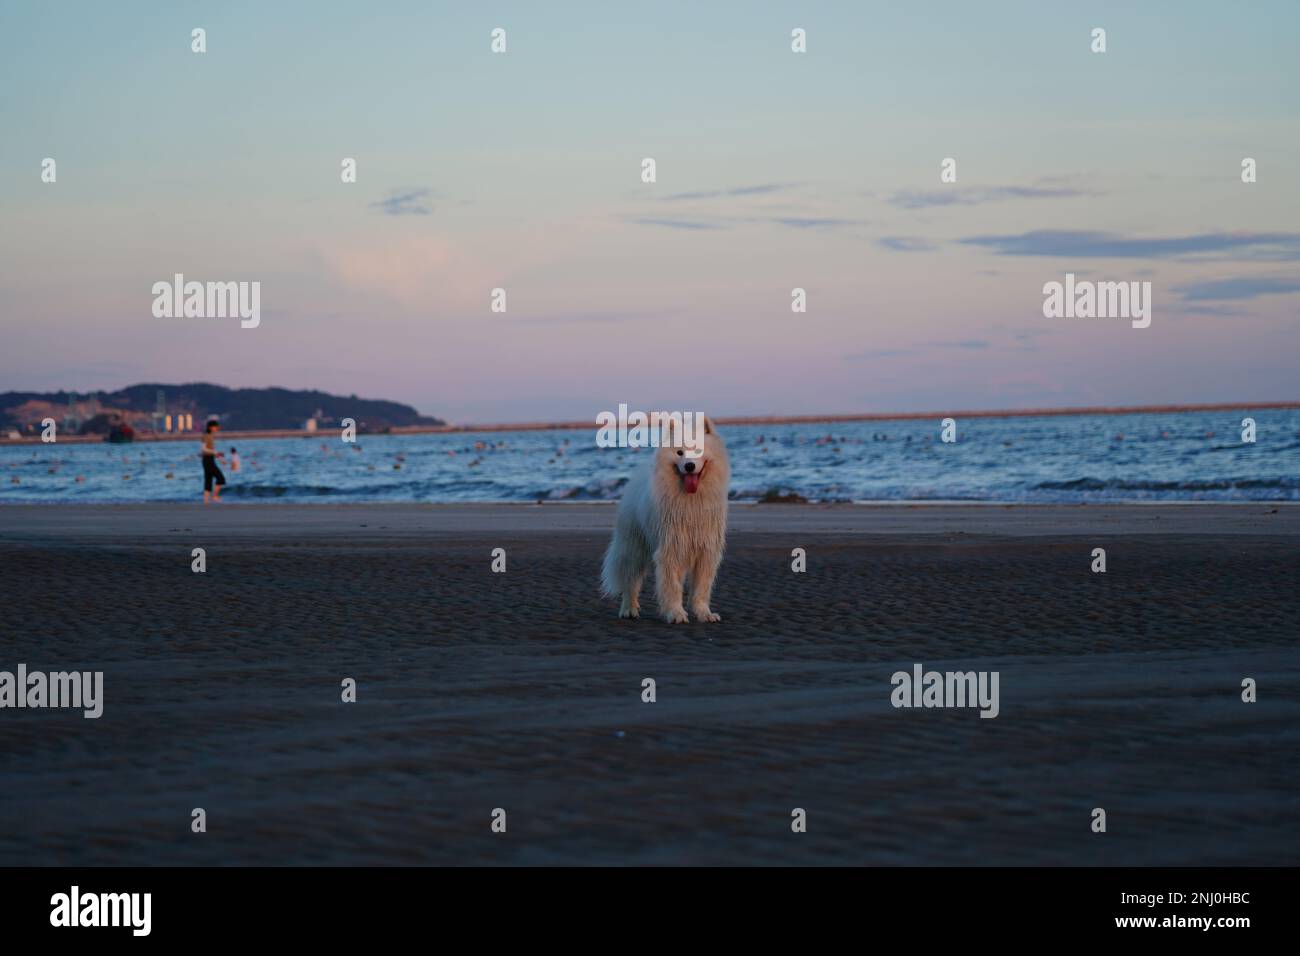 Le chien blanc Samoyed se trouve sur la plage, avec des personnes qui nagent dans l'océan en arrière-plan Banque D'Images